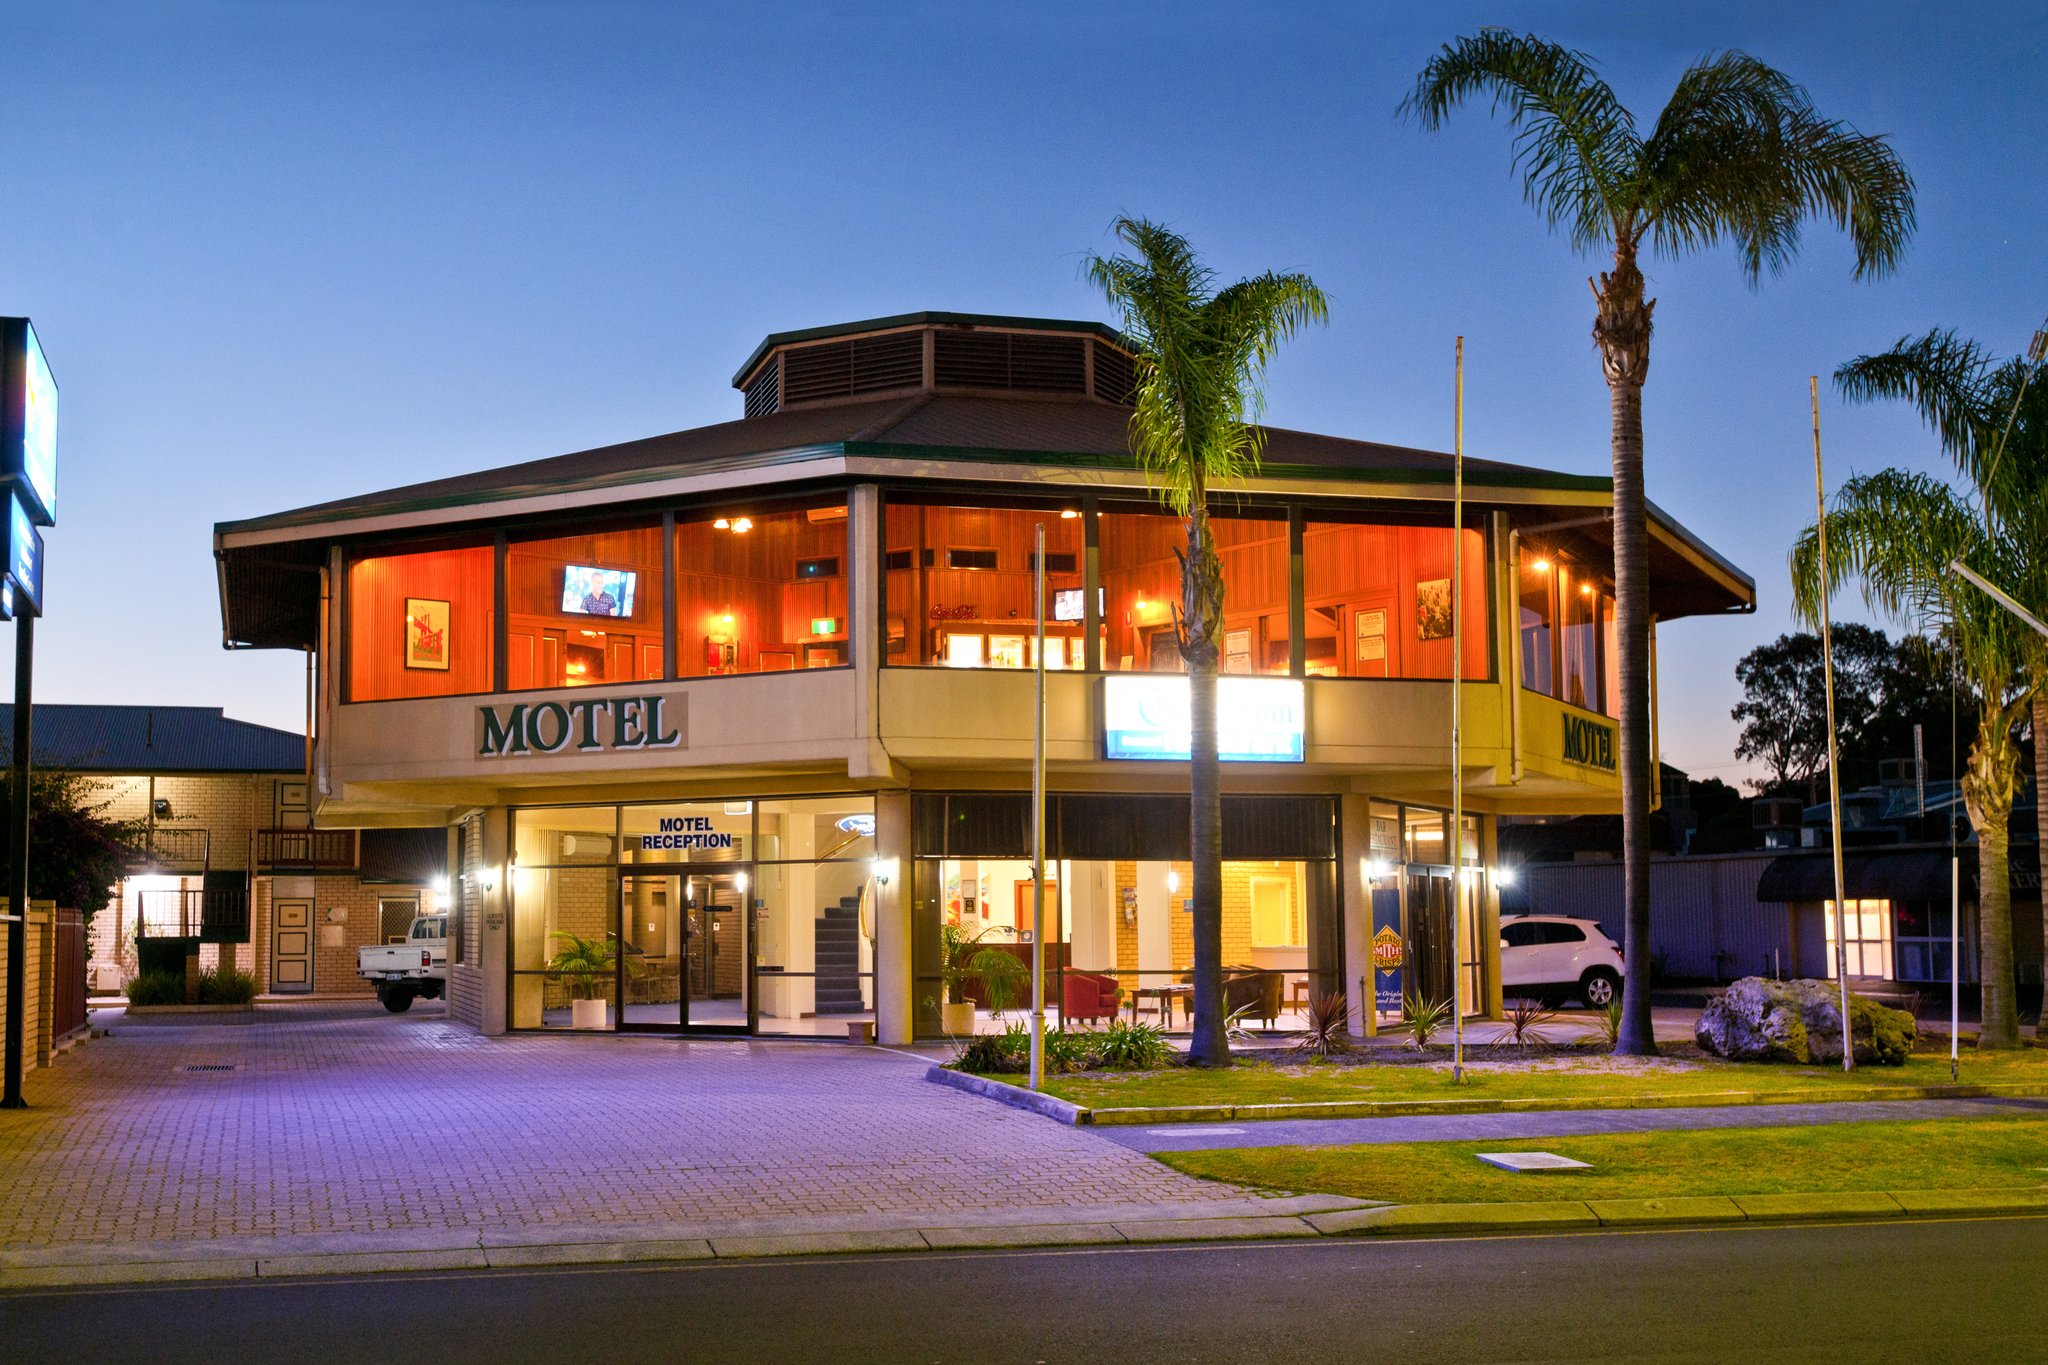 Australind motel